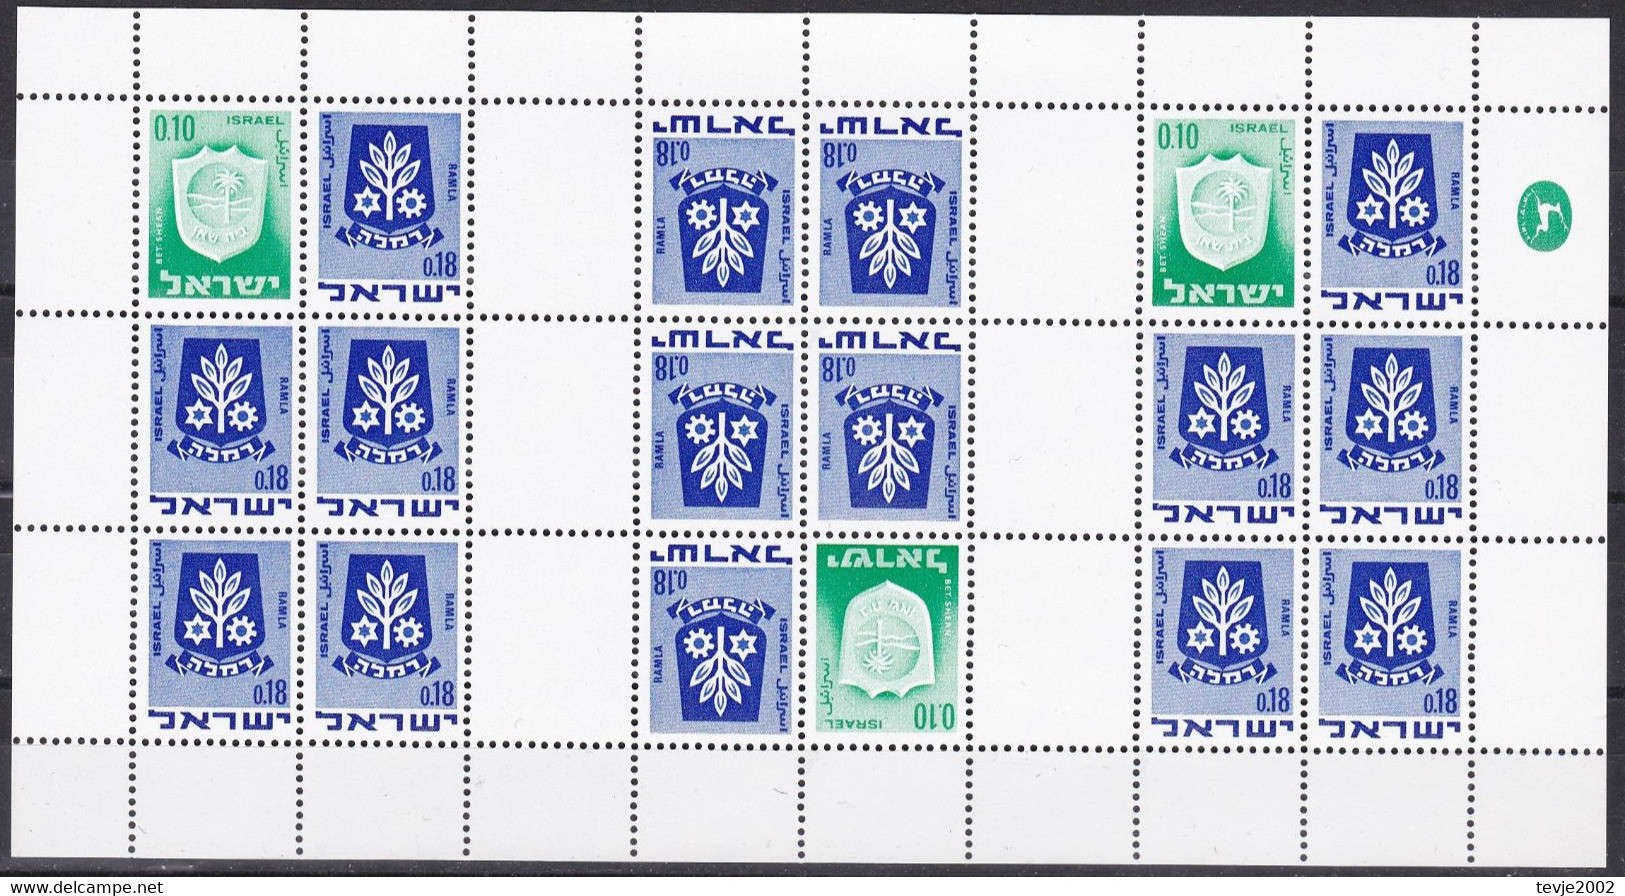 Israel 1973 - Markenheftchenbogen Mi.Nr. 326 + 486 - Postfrisch MNH - Markenheftchen